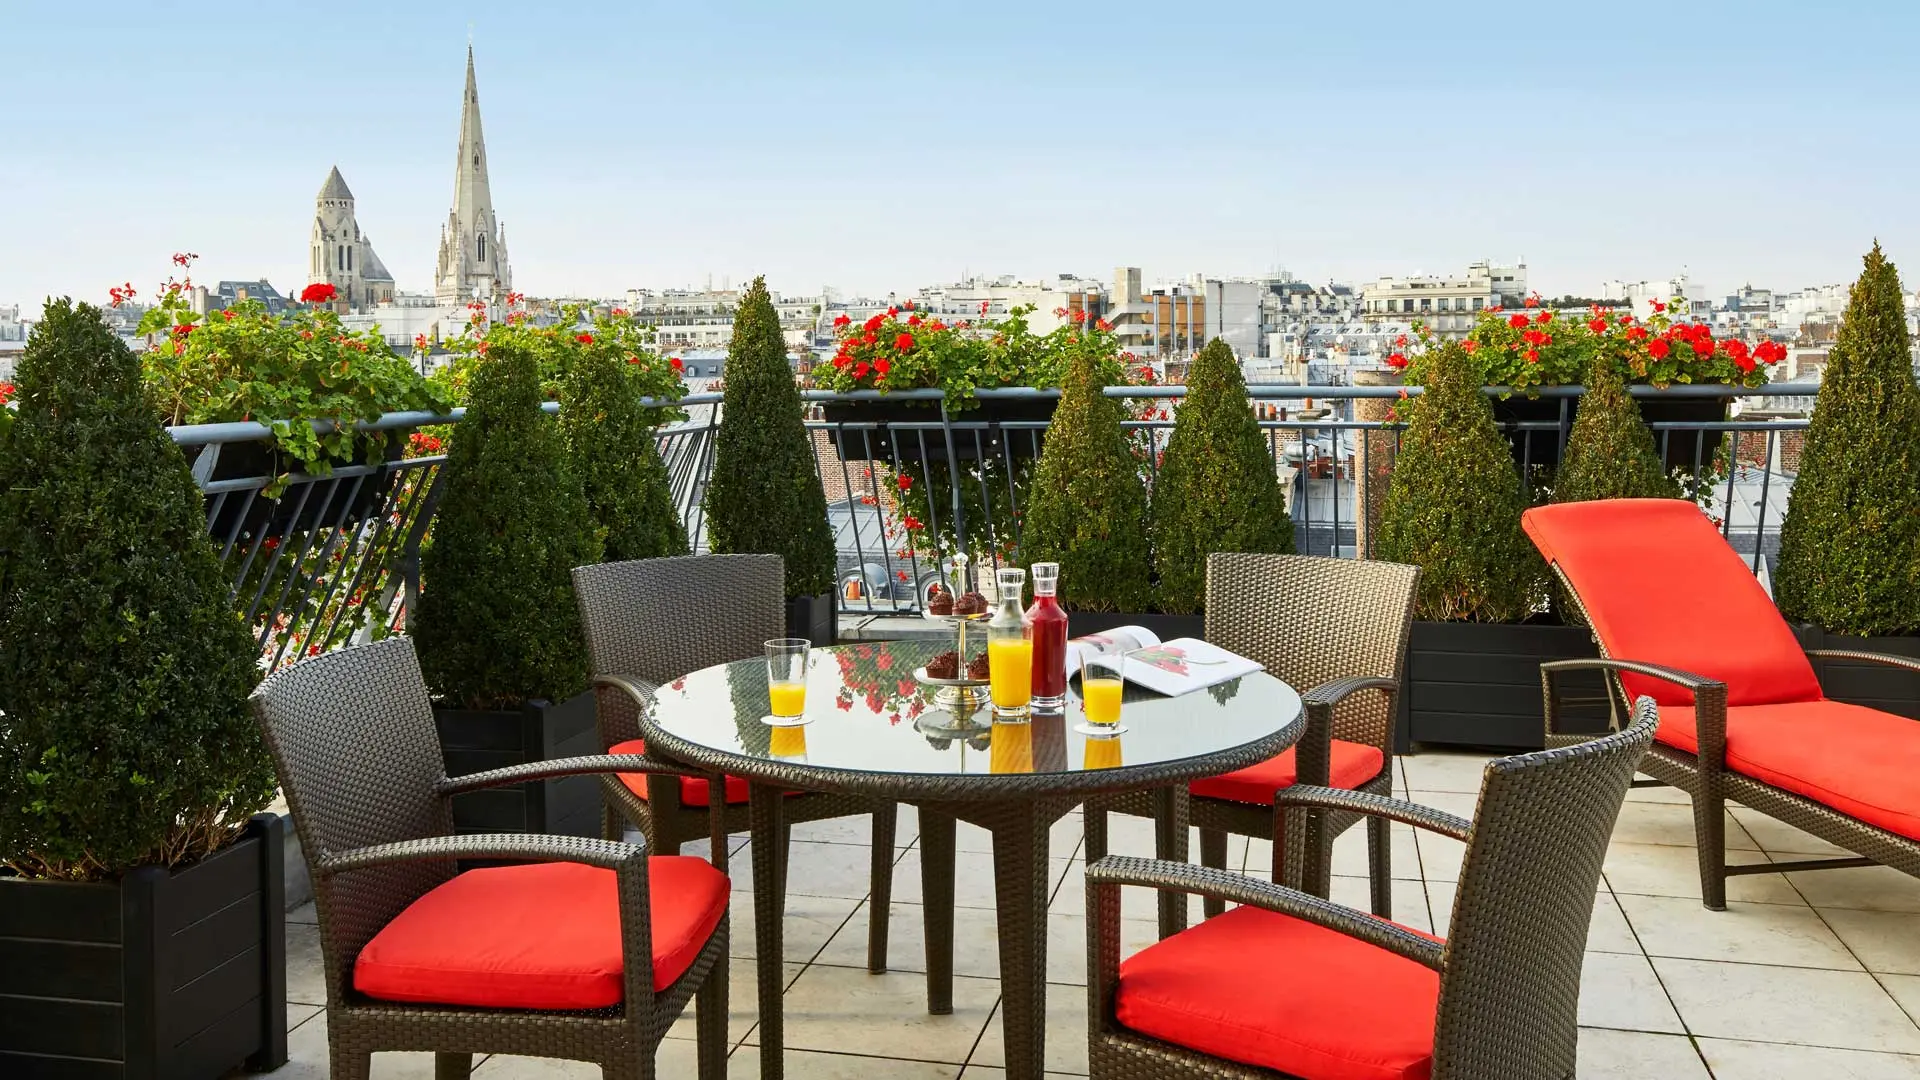 Hotel review Location' - Hôtel Plaza Athénée Paris - 2